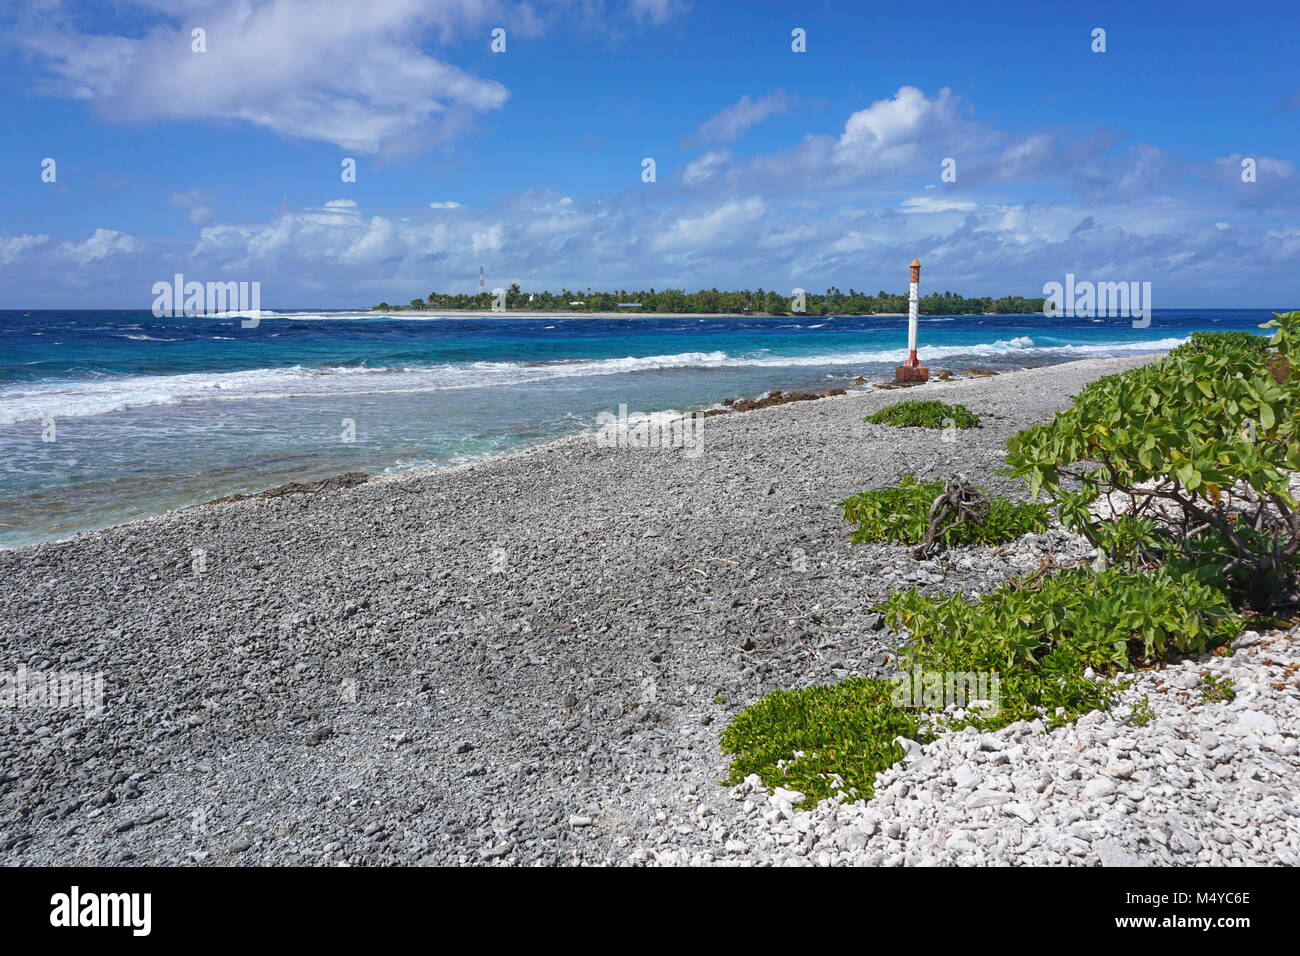 La Polinesia Francesa, el atolón de Rangiroa el canal Tiputa, Tuamotus, Océano Pacífico del sur Foto de stock